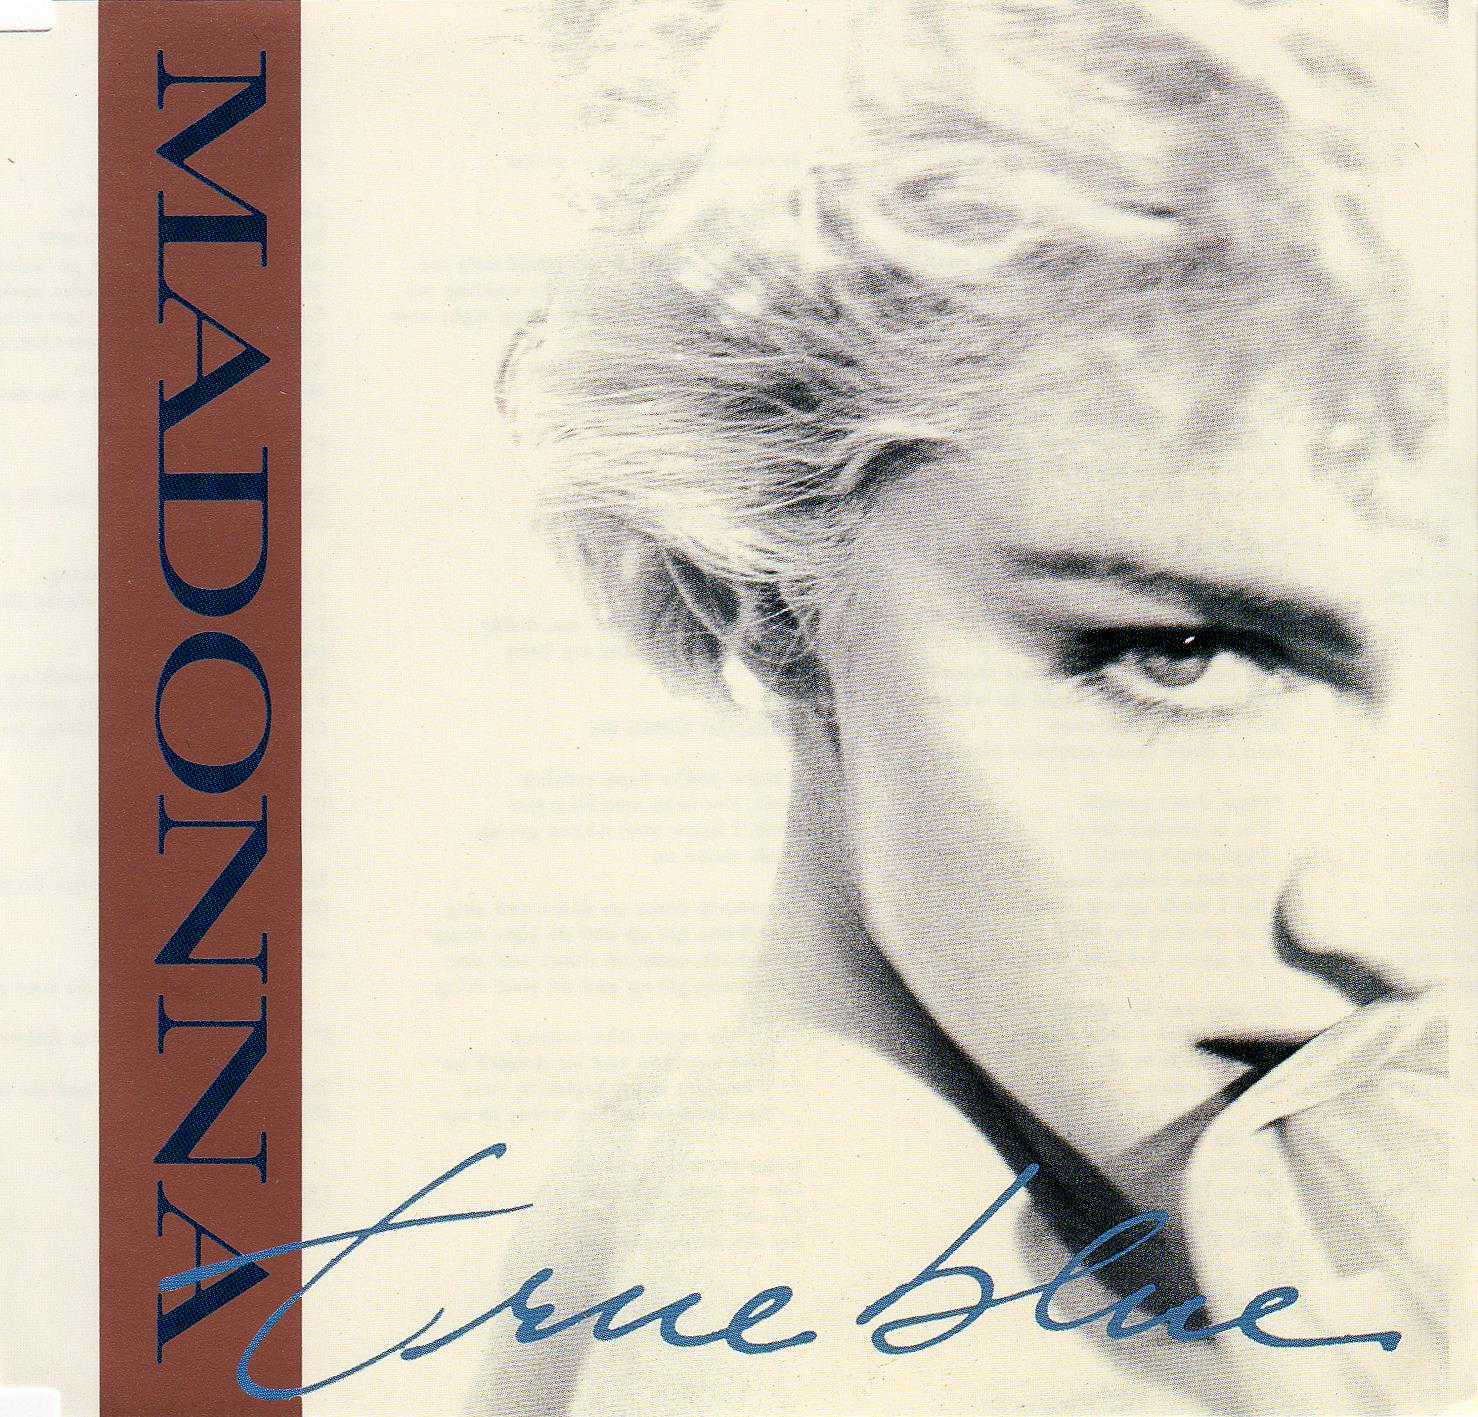 Madonna - True Blue (Super Club Mix) (Cdm)(1982-1986)